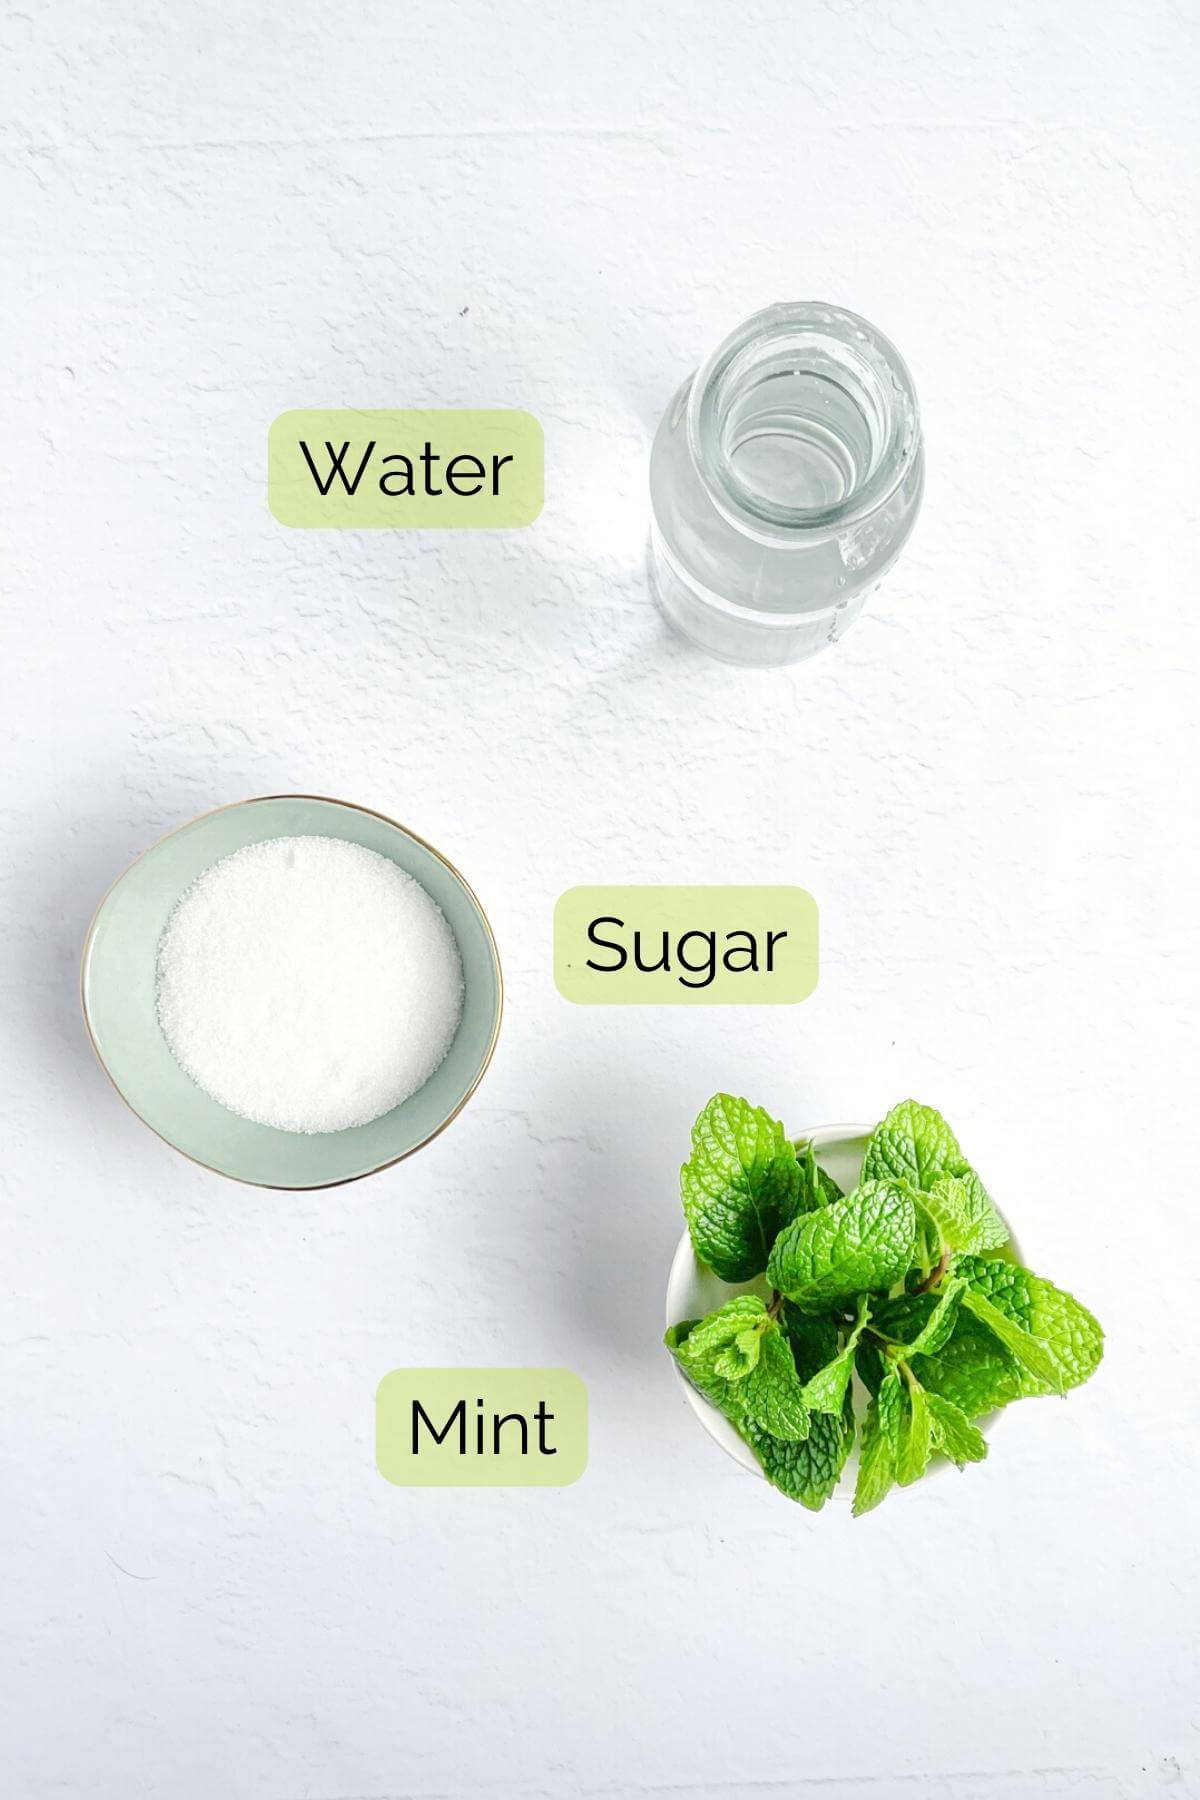 Vista panorámica de los ingredientes del jarabe de menta, que incluyen menta fresca, agua y azúcar.